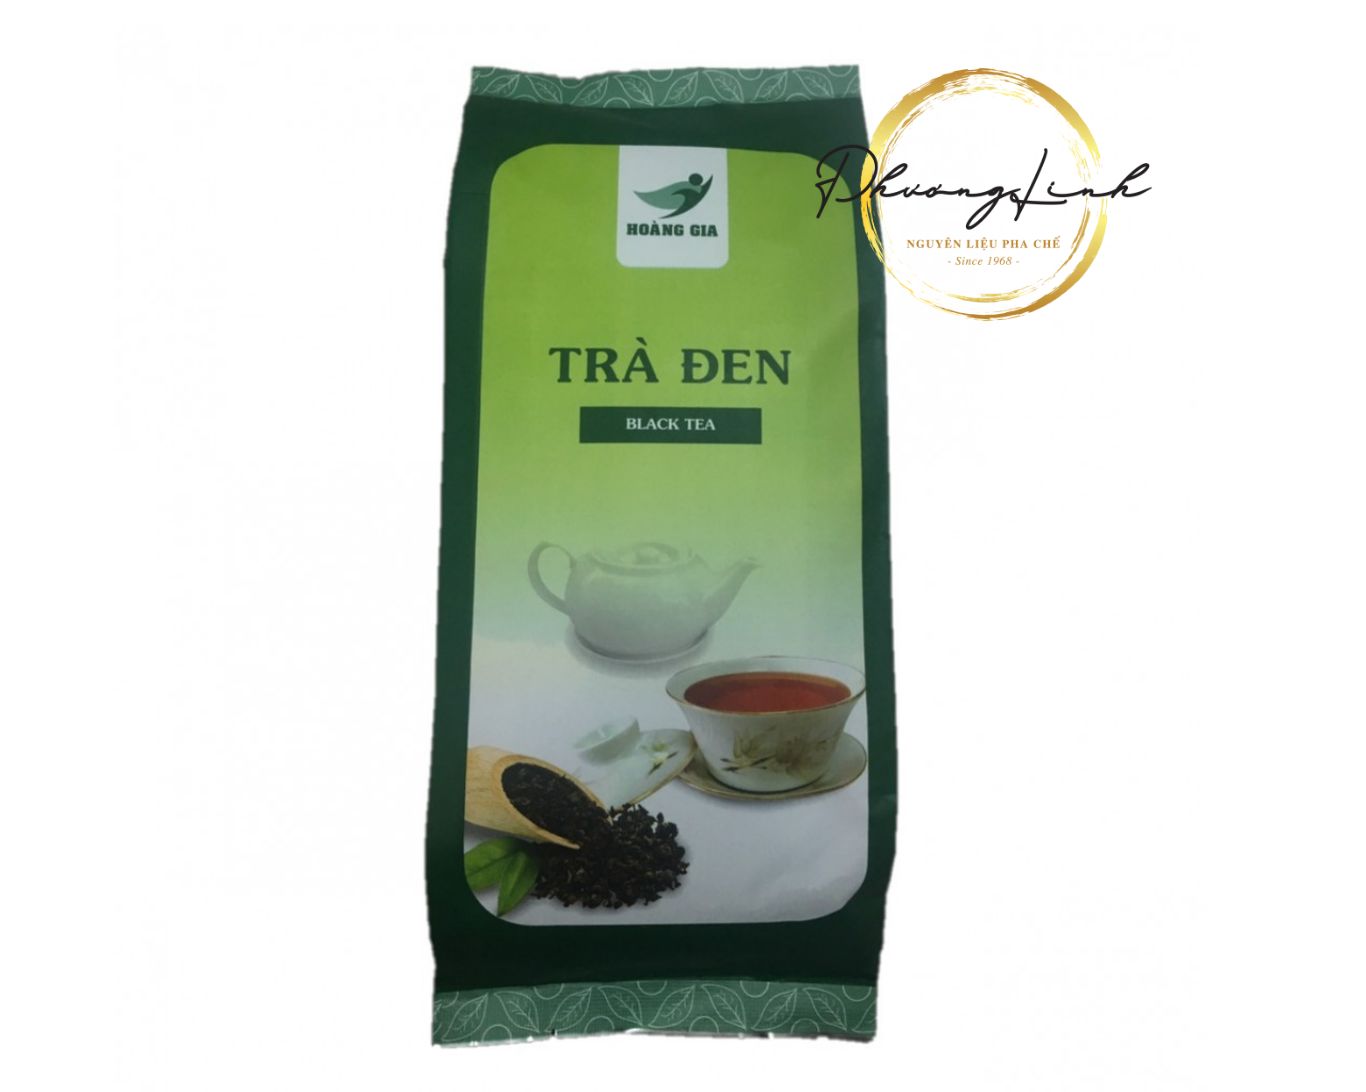 Trà Đen  - Black Tea Hiệu Hoàng Gia Trọng Lượng Gói 500g  Sản Phẩm Đúng Mô Tả  100%